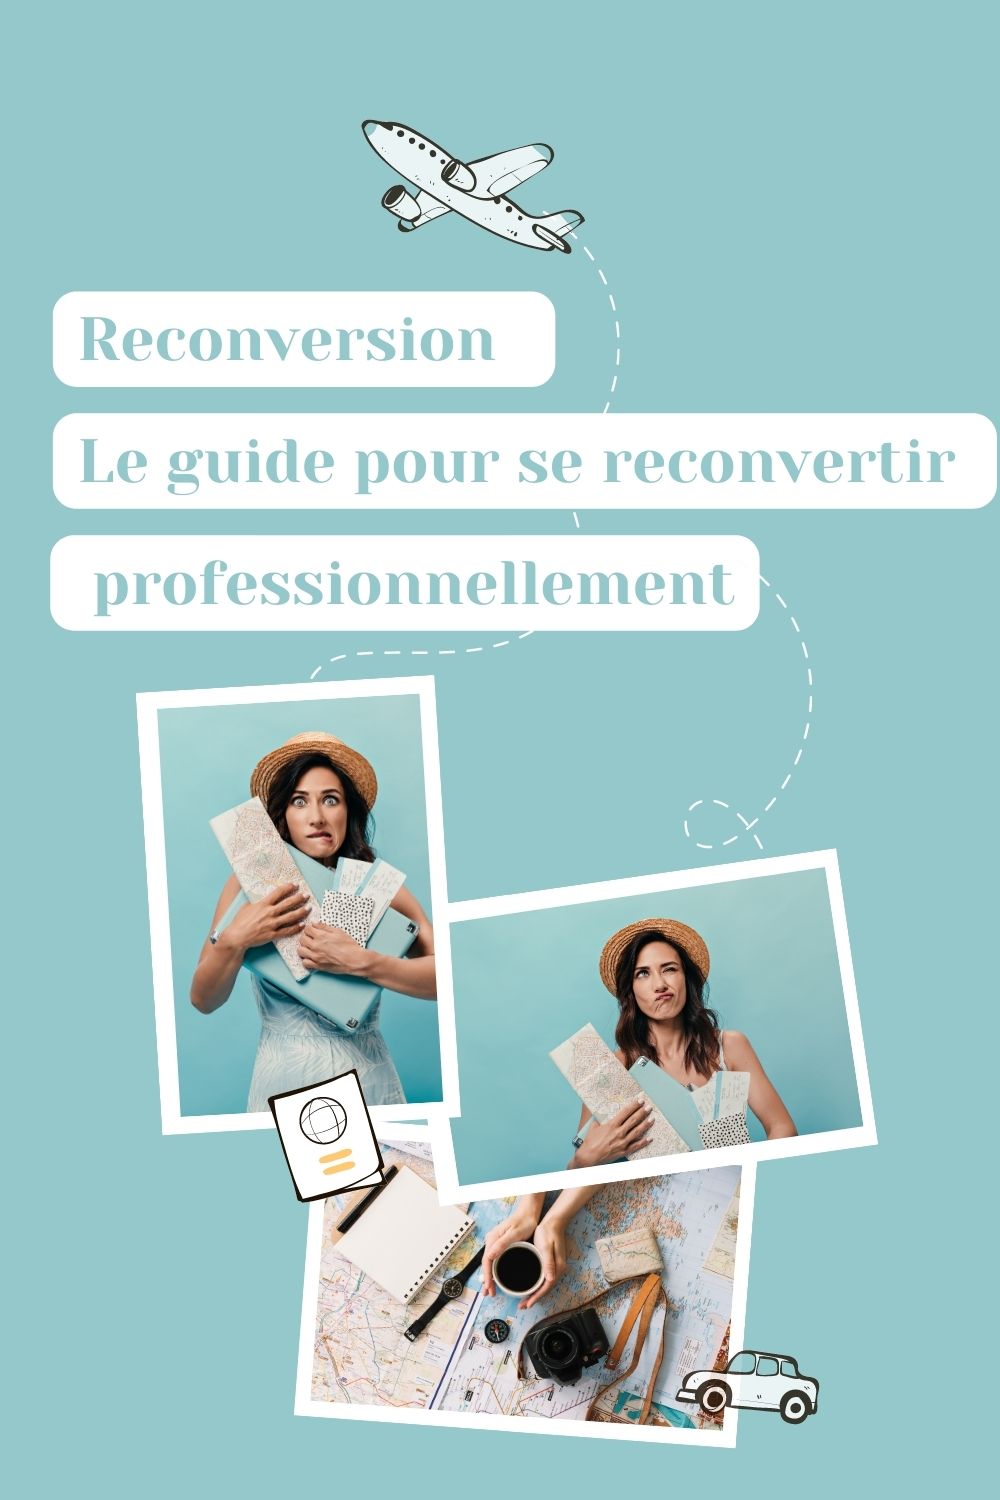 Reconversion |<br />
Le guide pour se reconvertir professionnellement<br />
